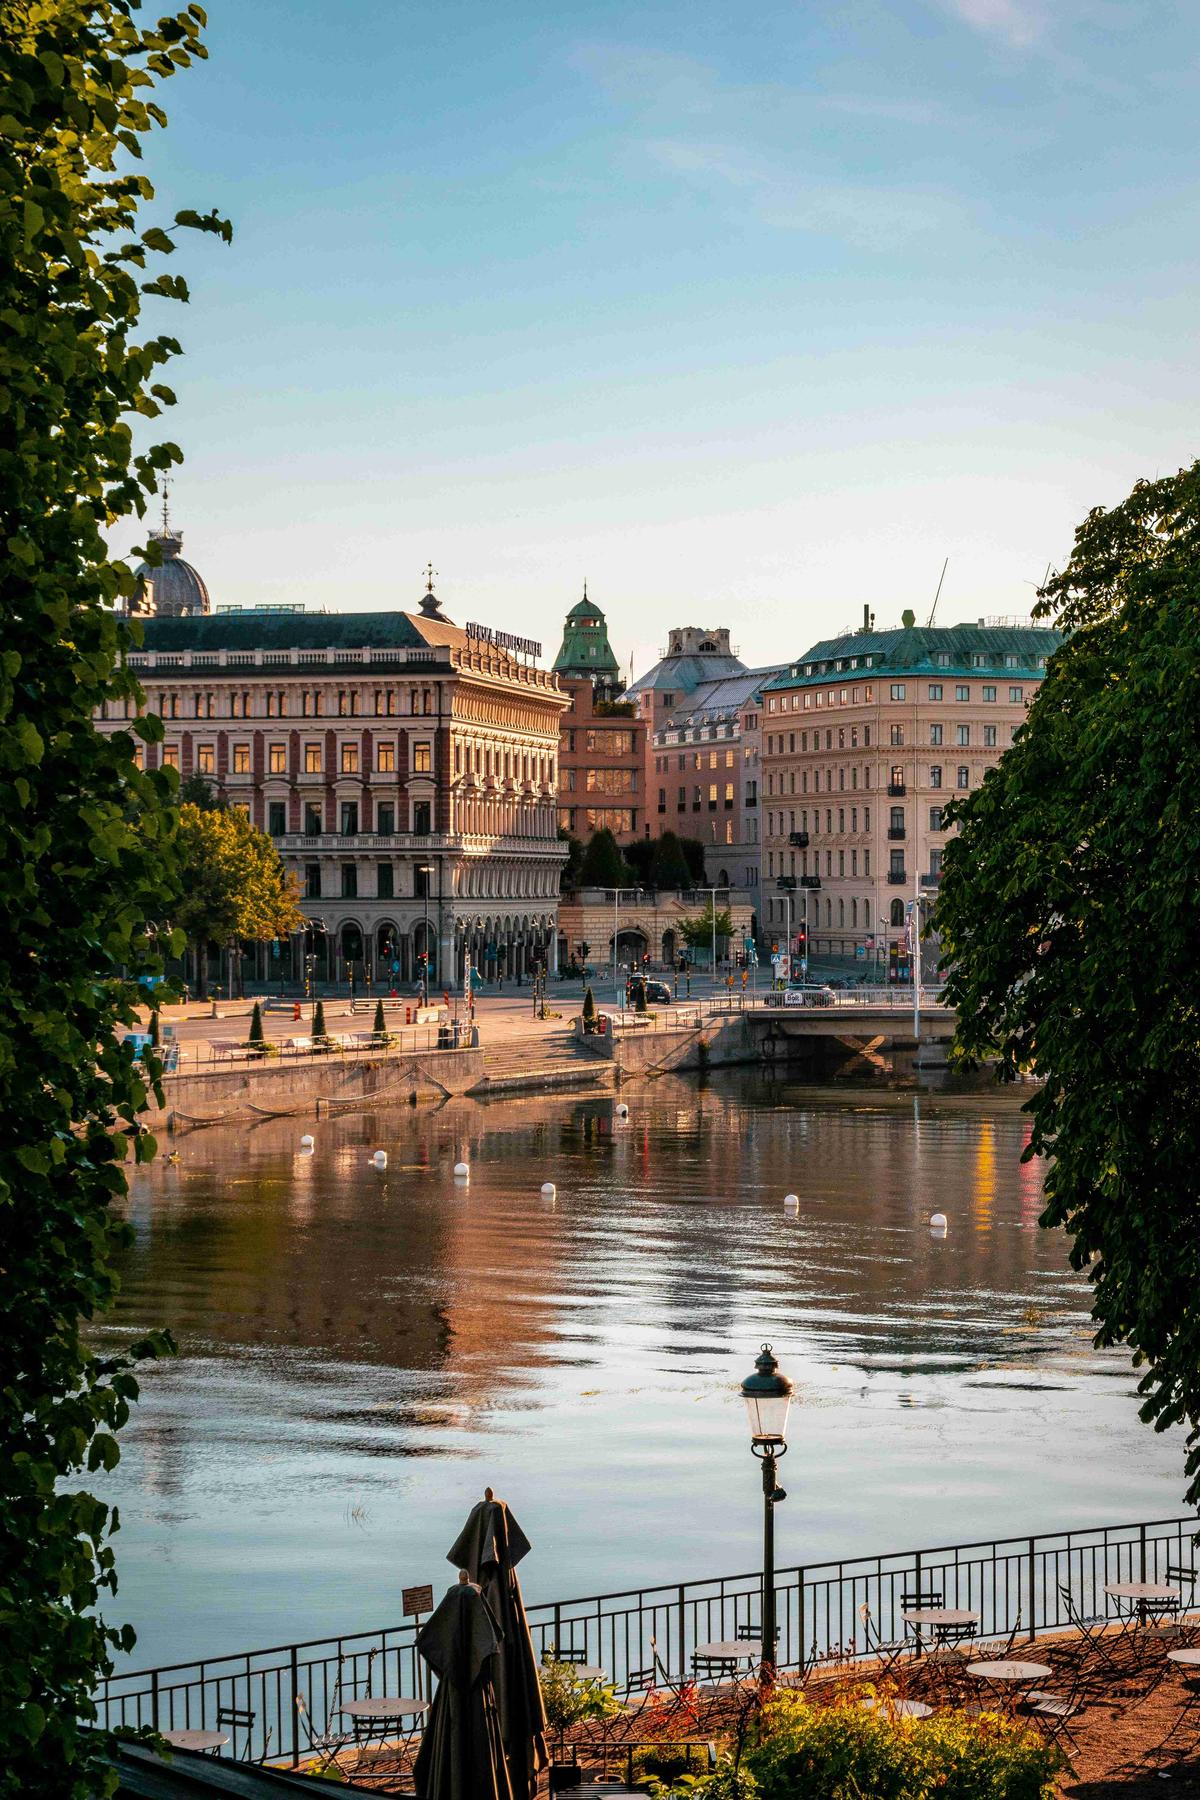 Malul râului luminat de soare cu arhitectură istorică Stockholm